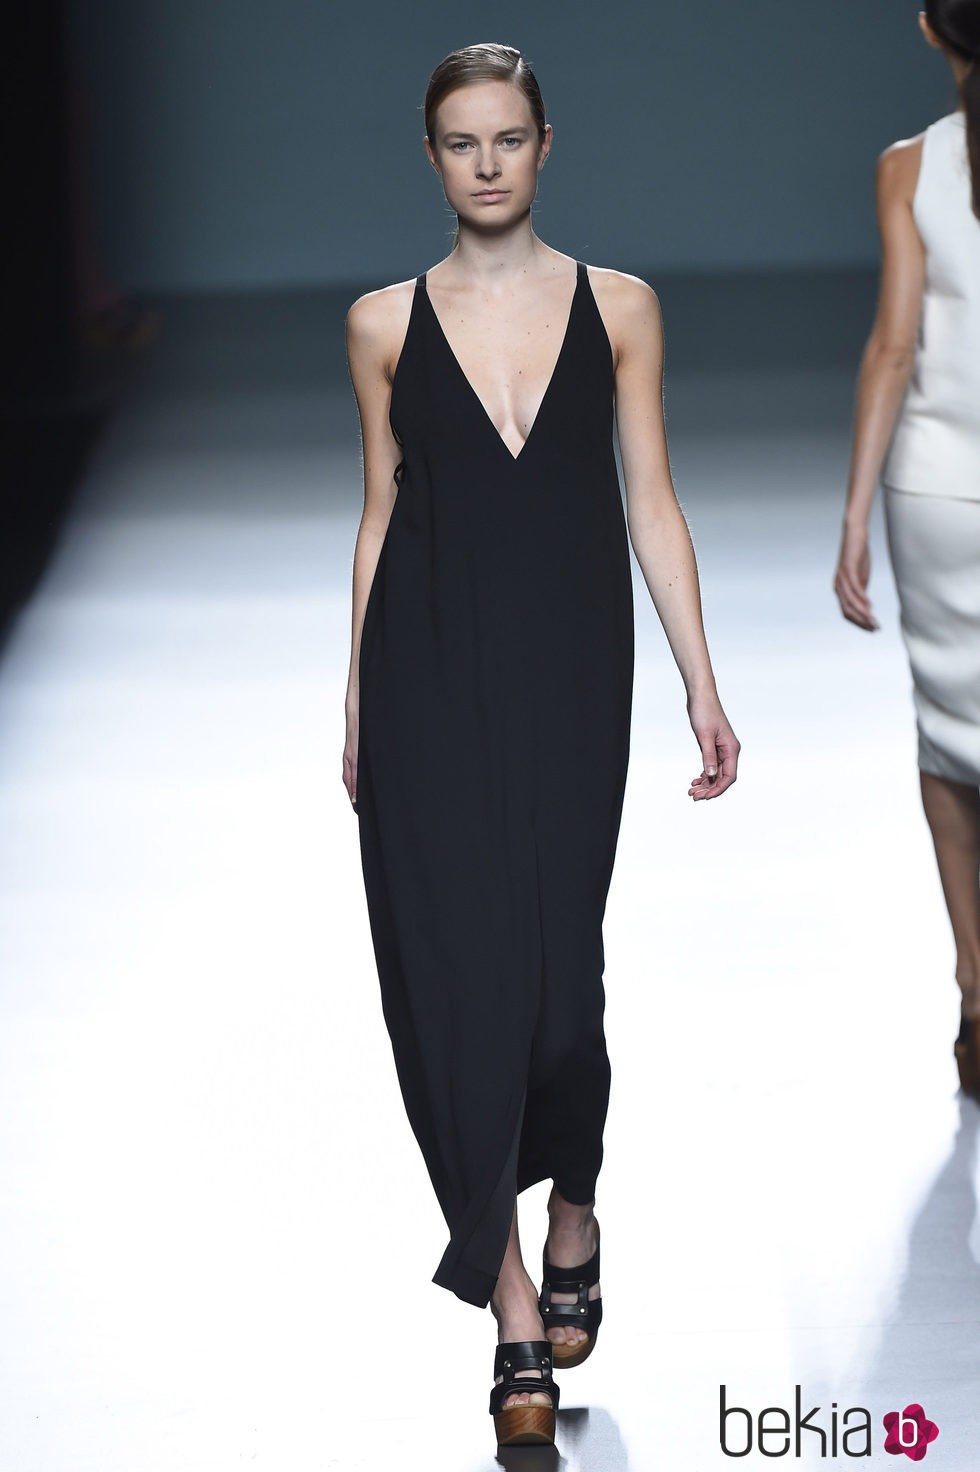 Vestido negro de Ángel Schlesser para primavera/verano 2015 en Madrid Fashion Week